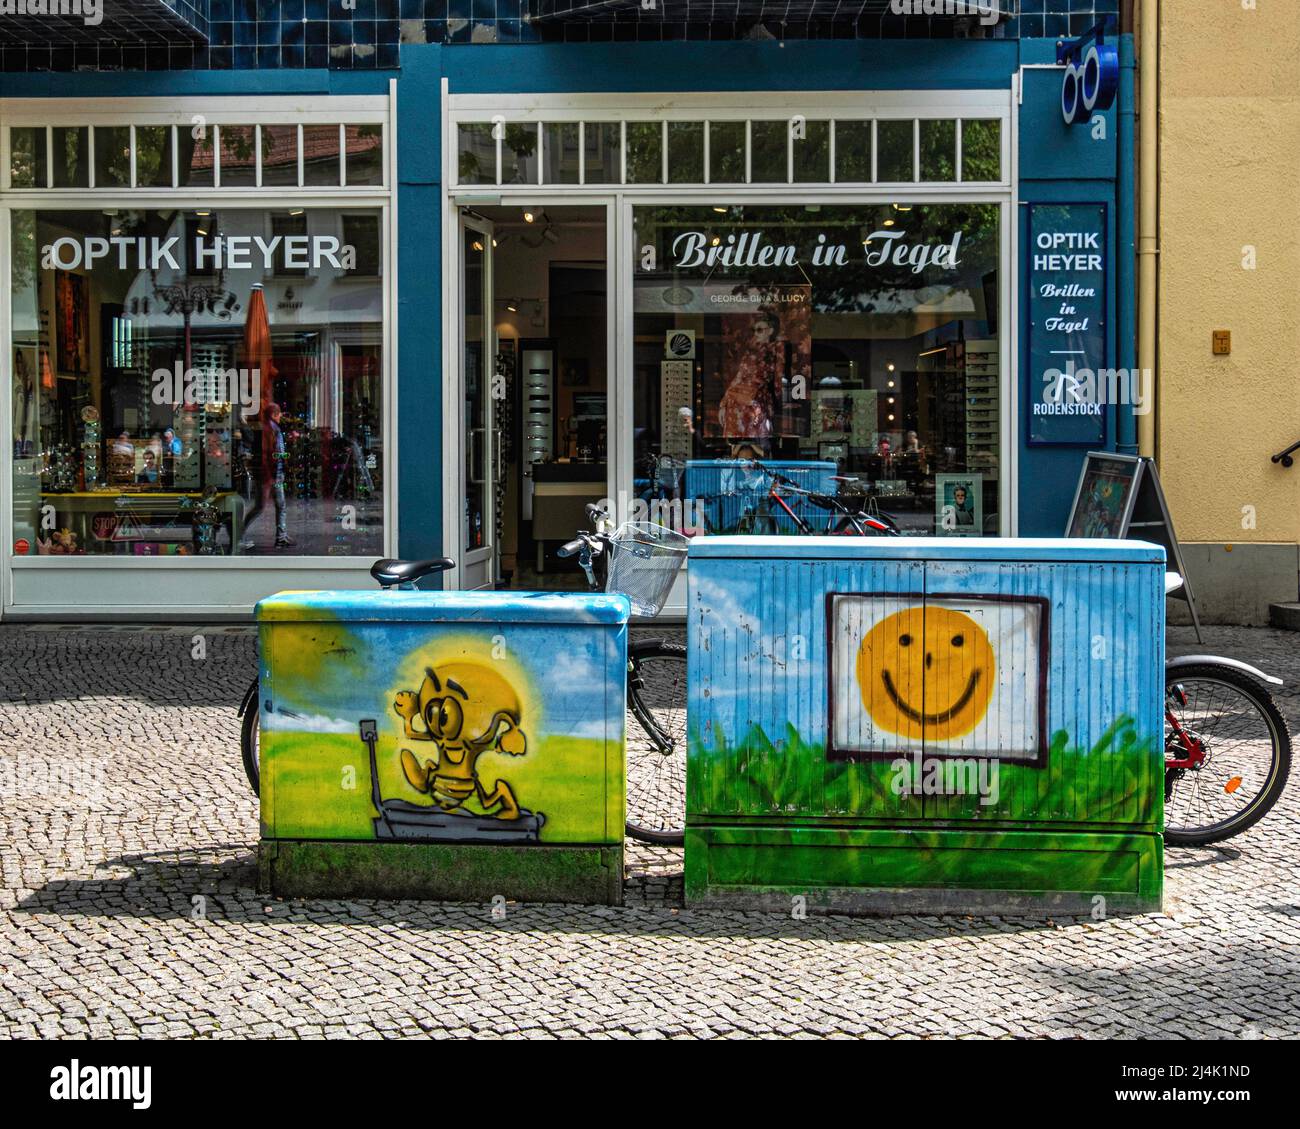 Optik Heyer Optiticien et boîtes utilitaires peintes à Alt-Tegel, Berlin. Boîte de service avec smiley visage paintwork Banque D'Images